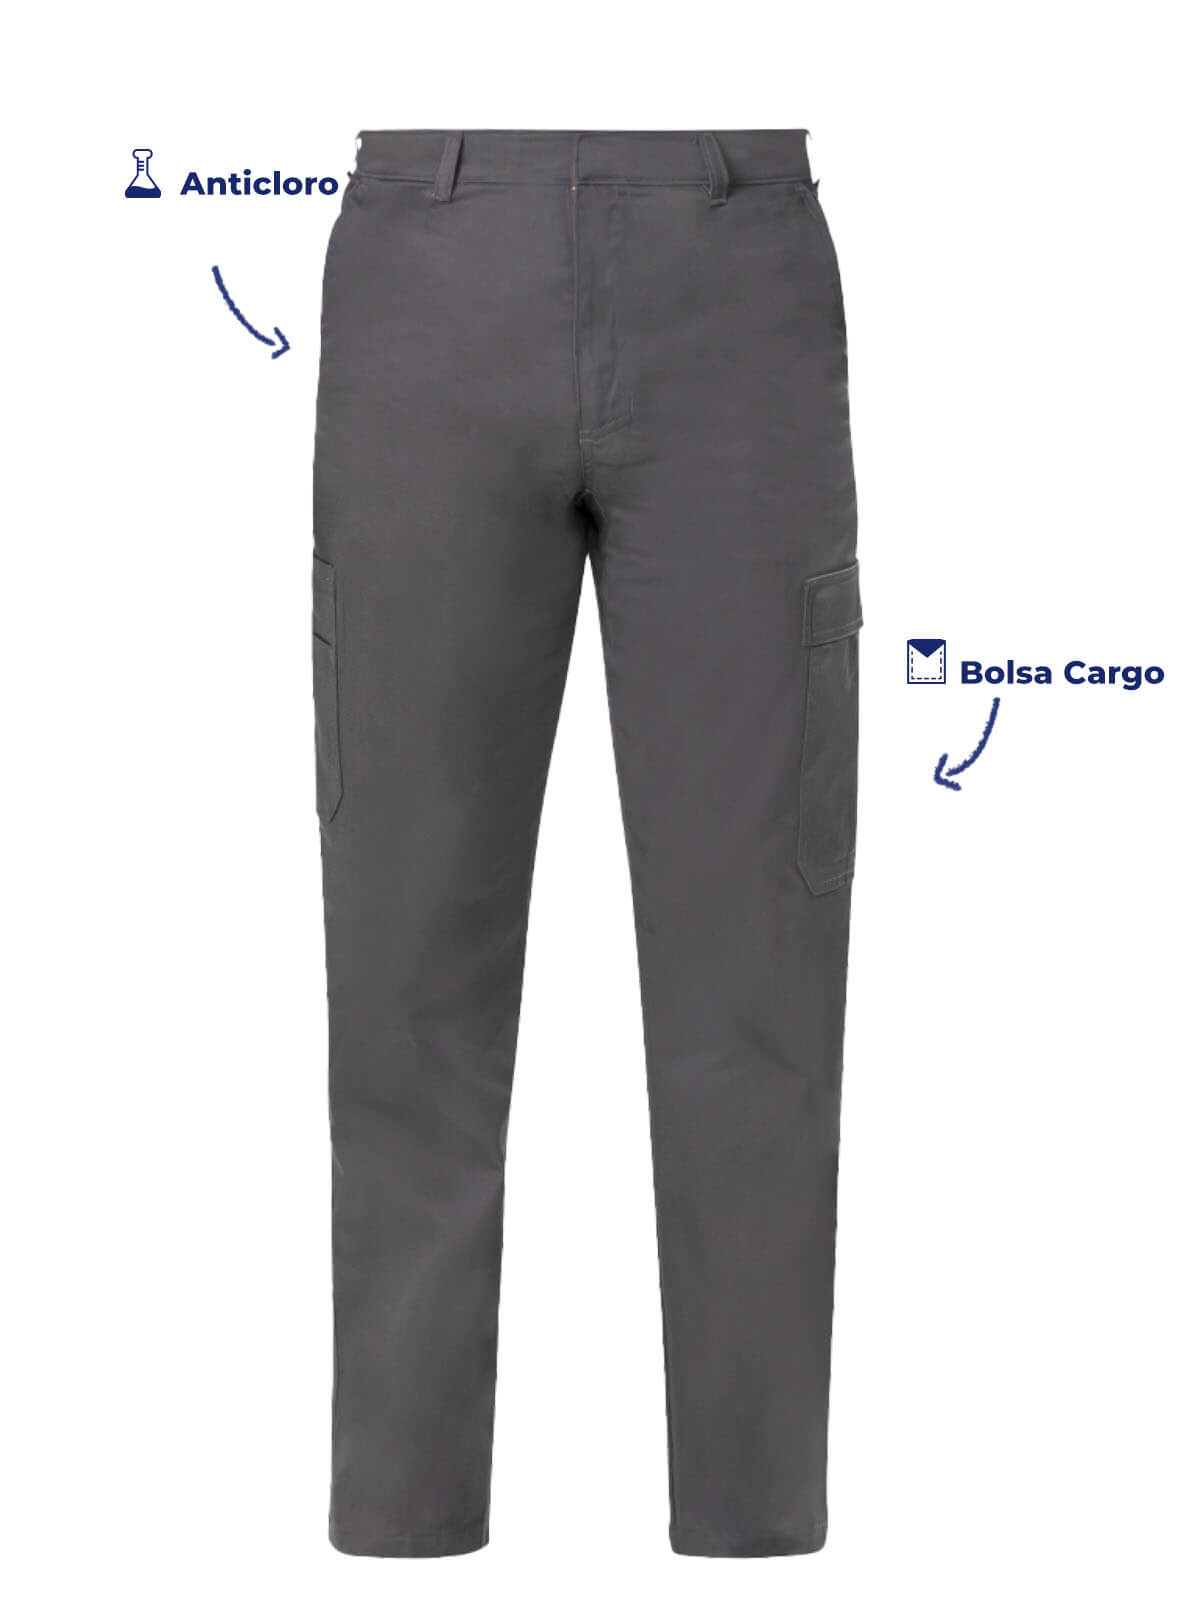 Pantalon tipo Cargo color gris vista hacia enfrente